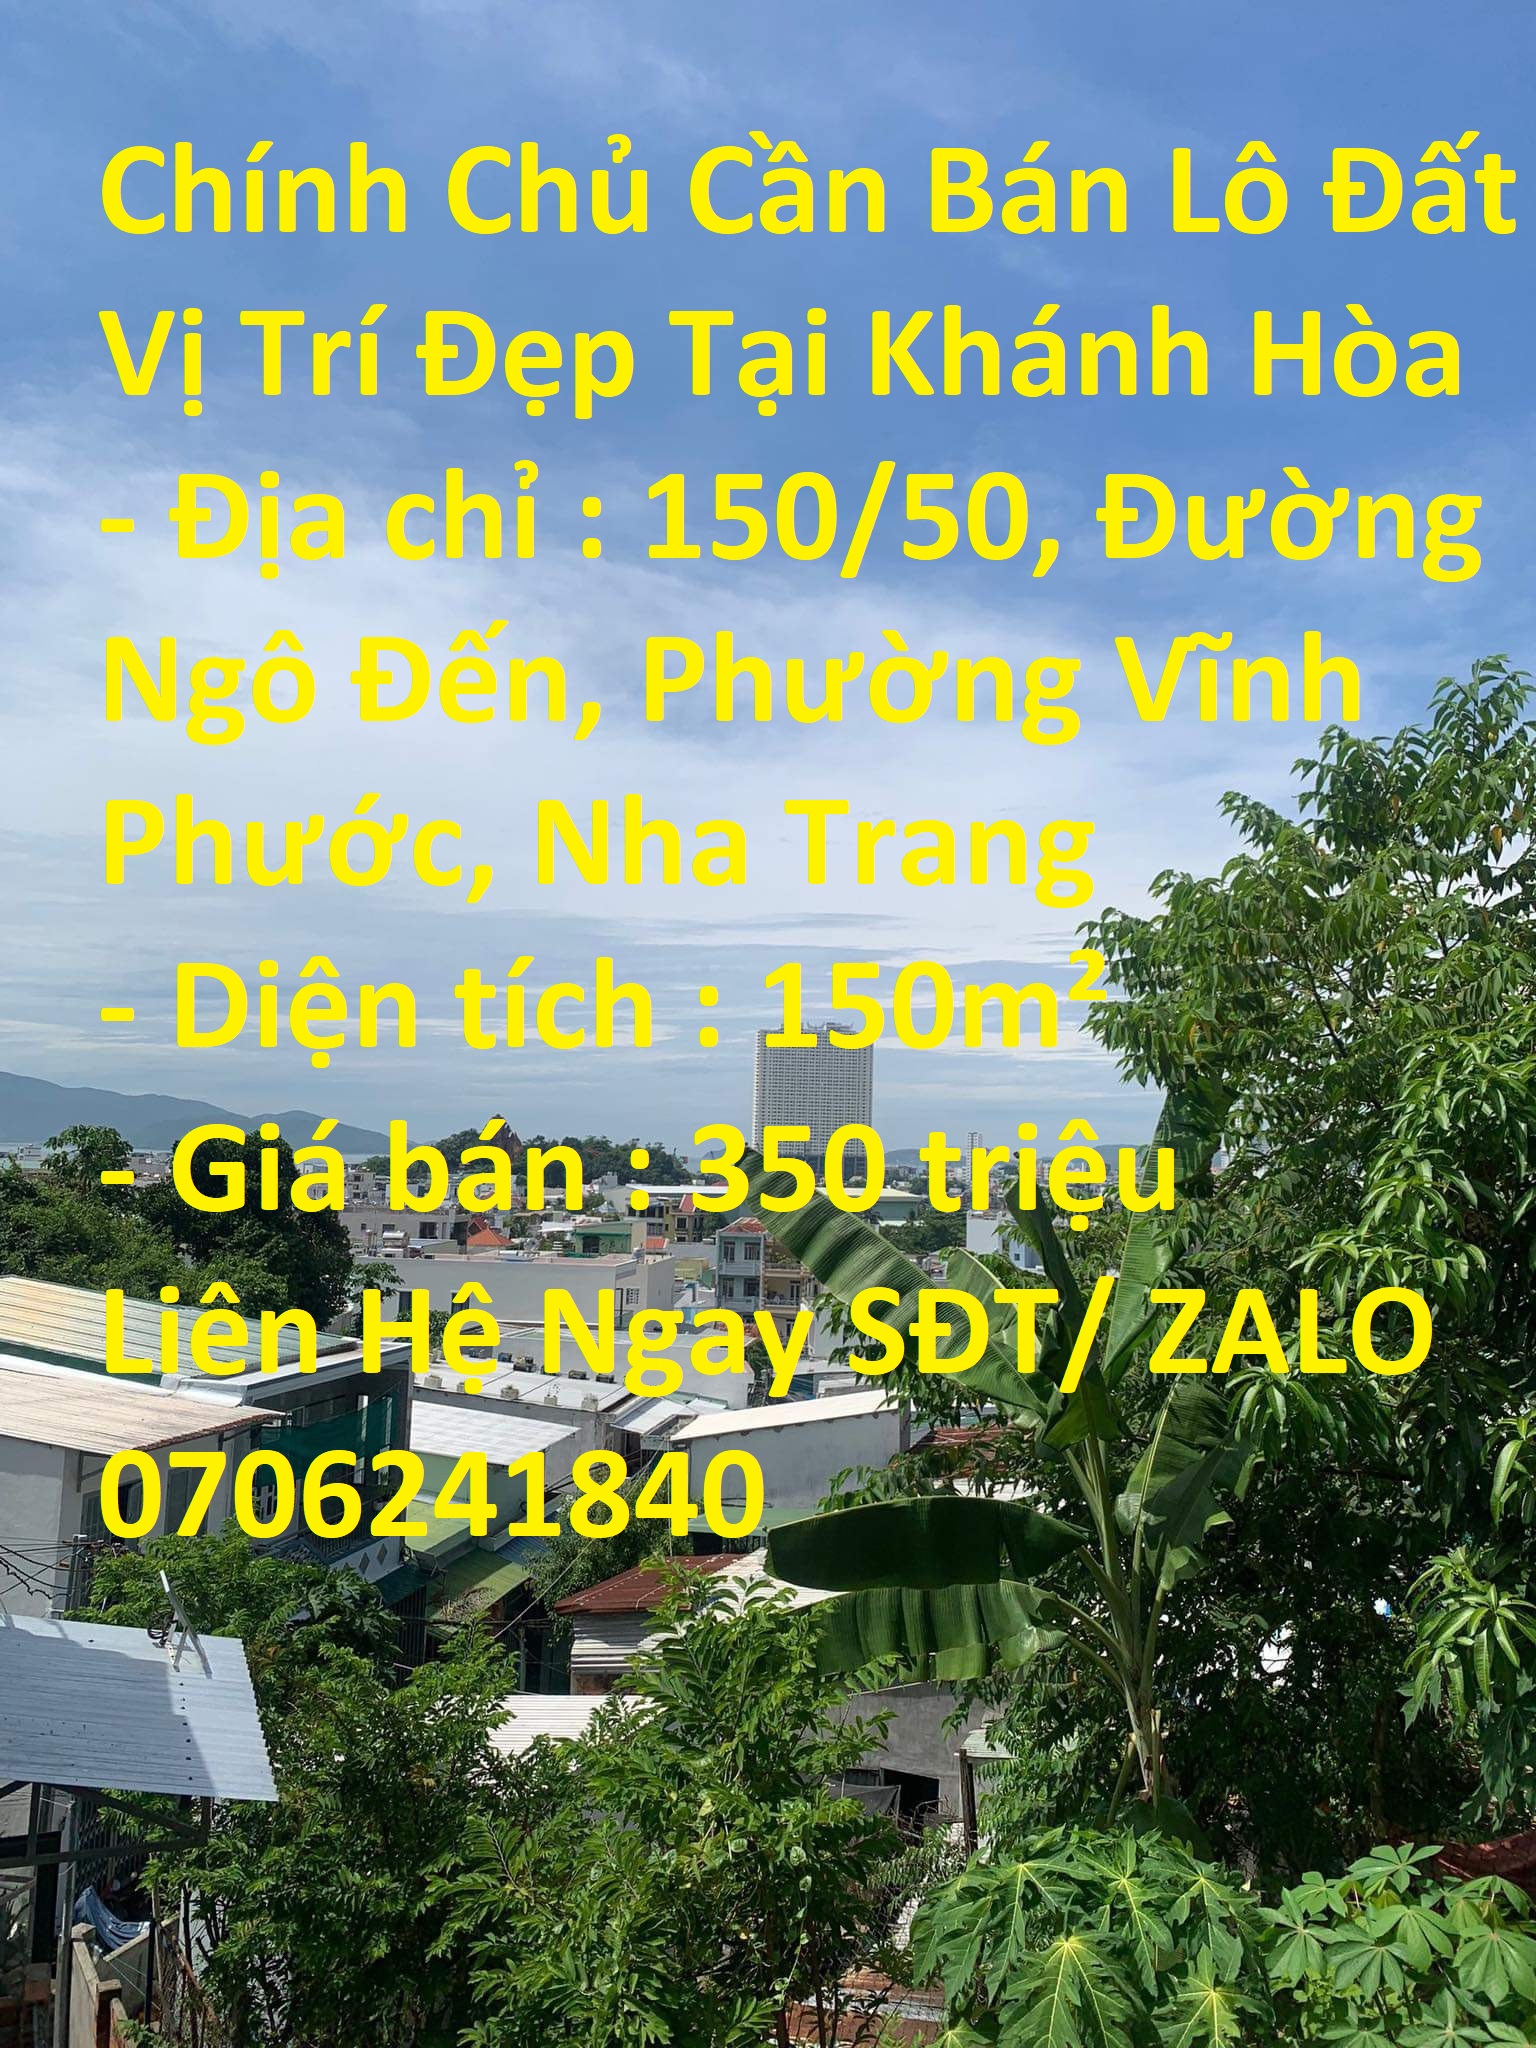 Chính Chủ Cần Bán Lô Đất  Phường Vĩnh Phước, Nha Trang 13902670